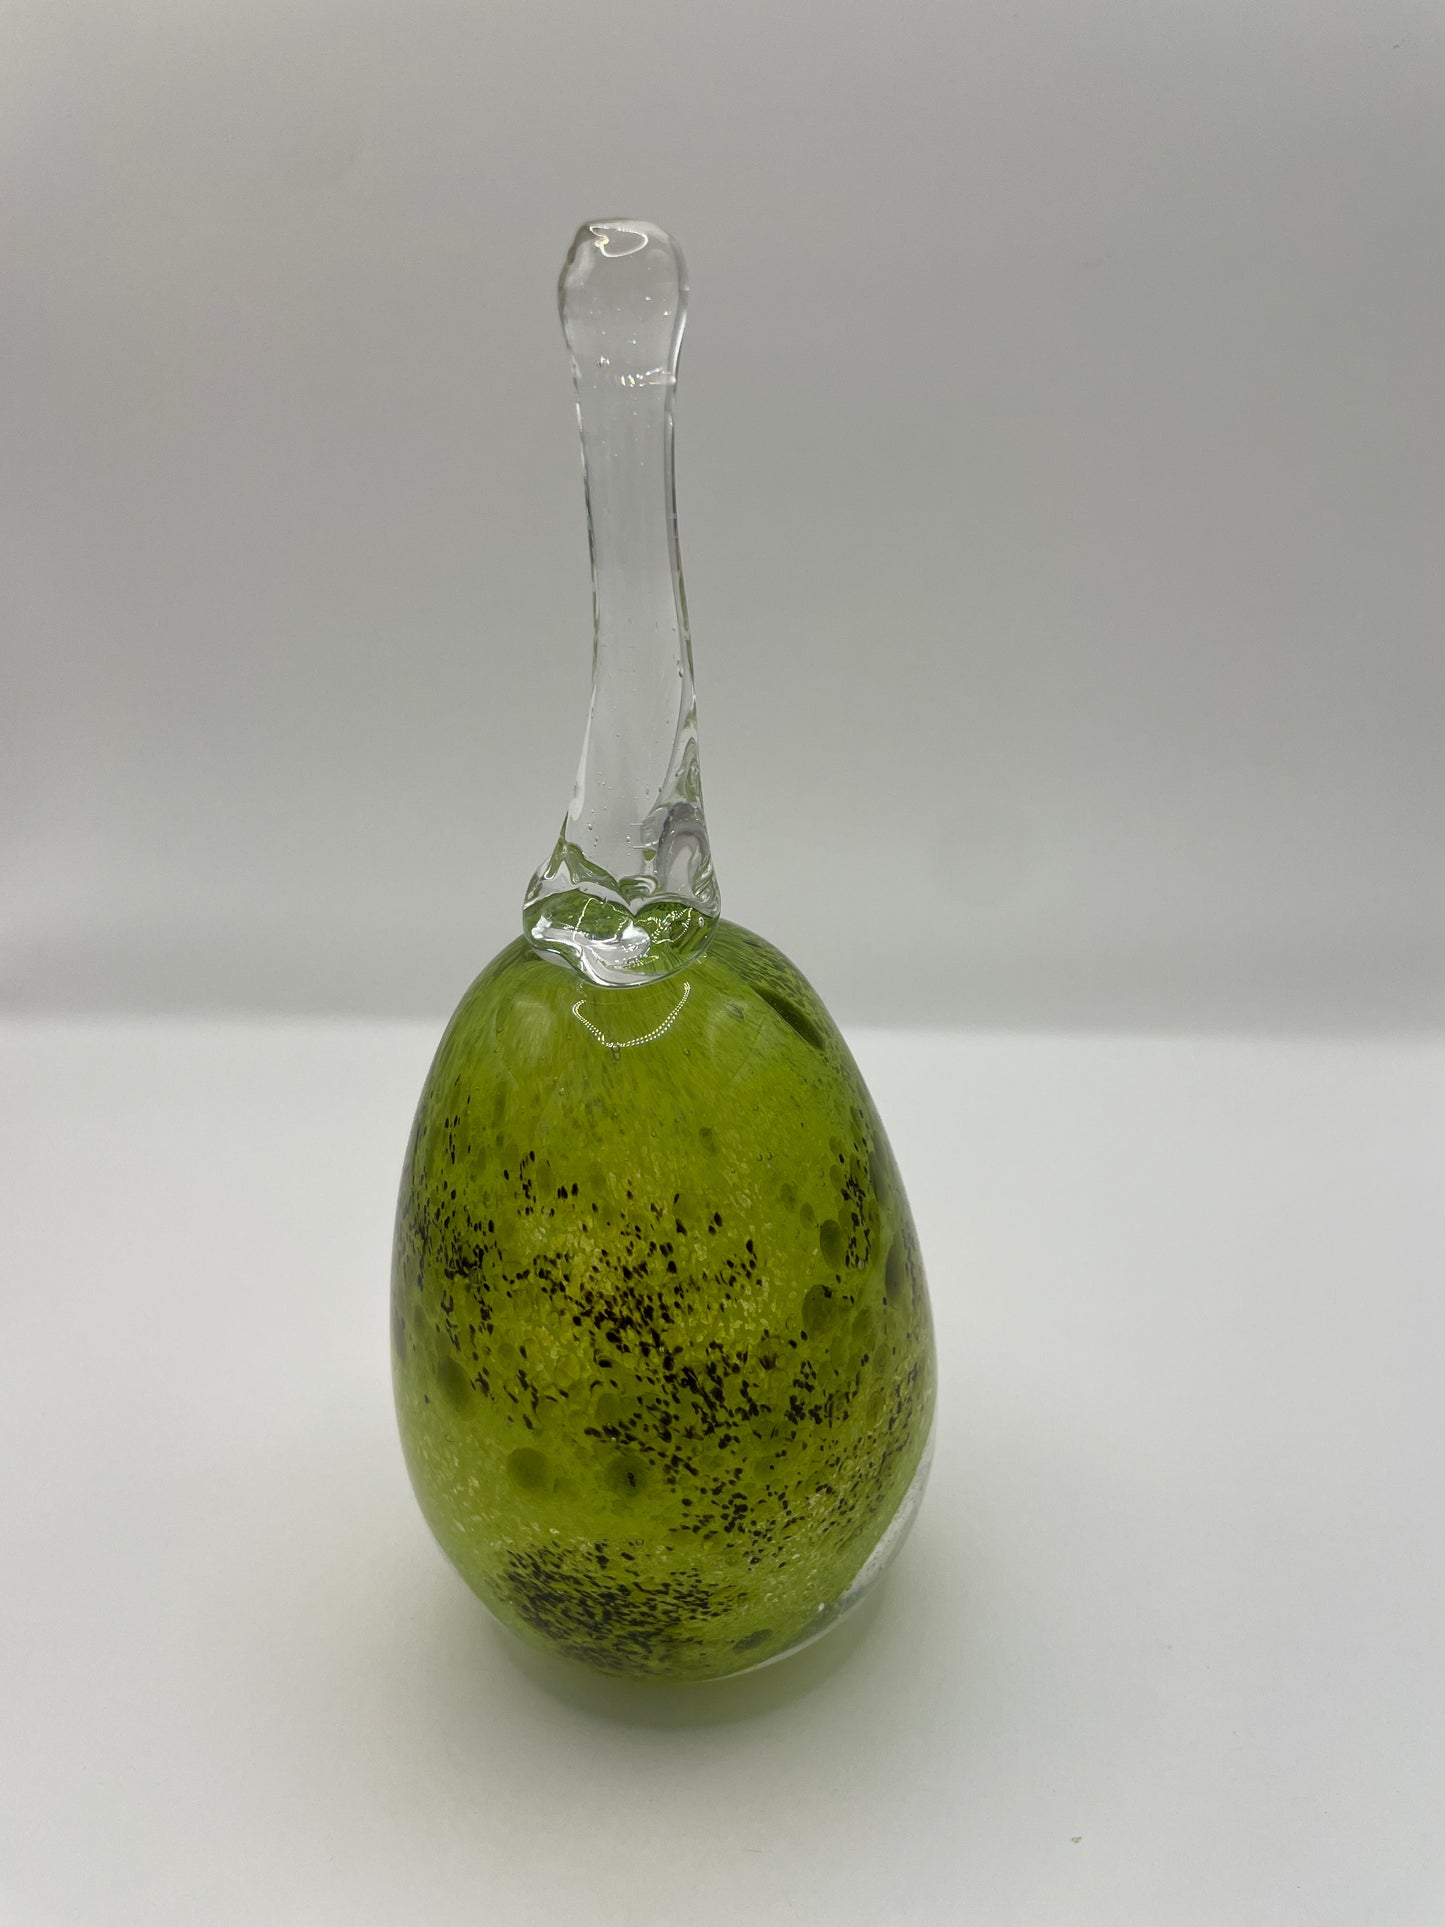 Blown glass pear